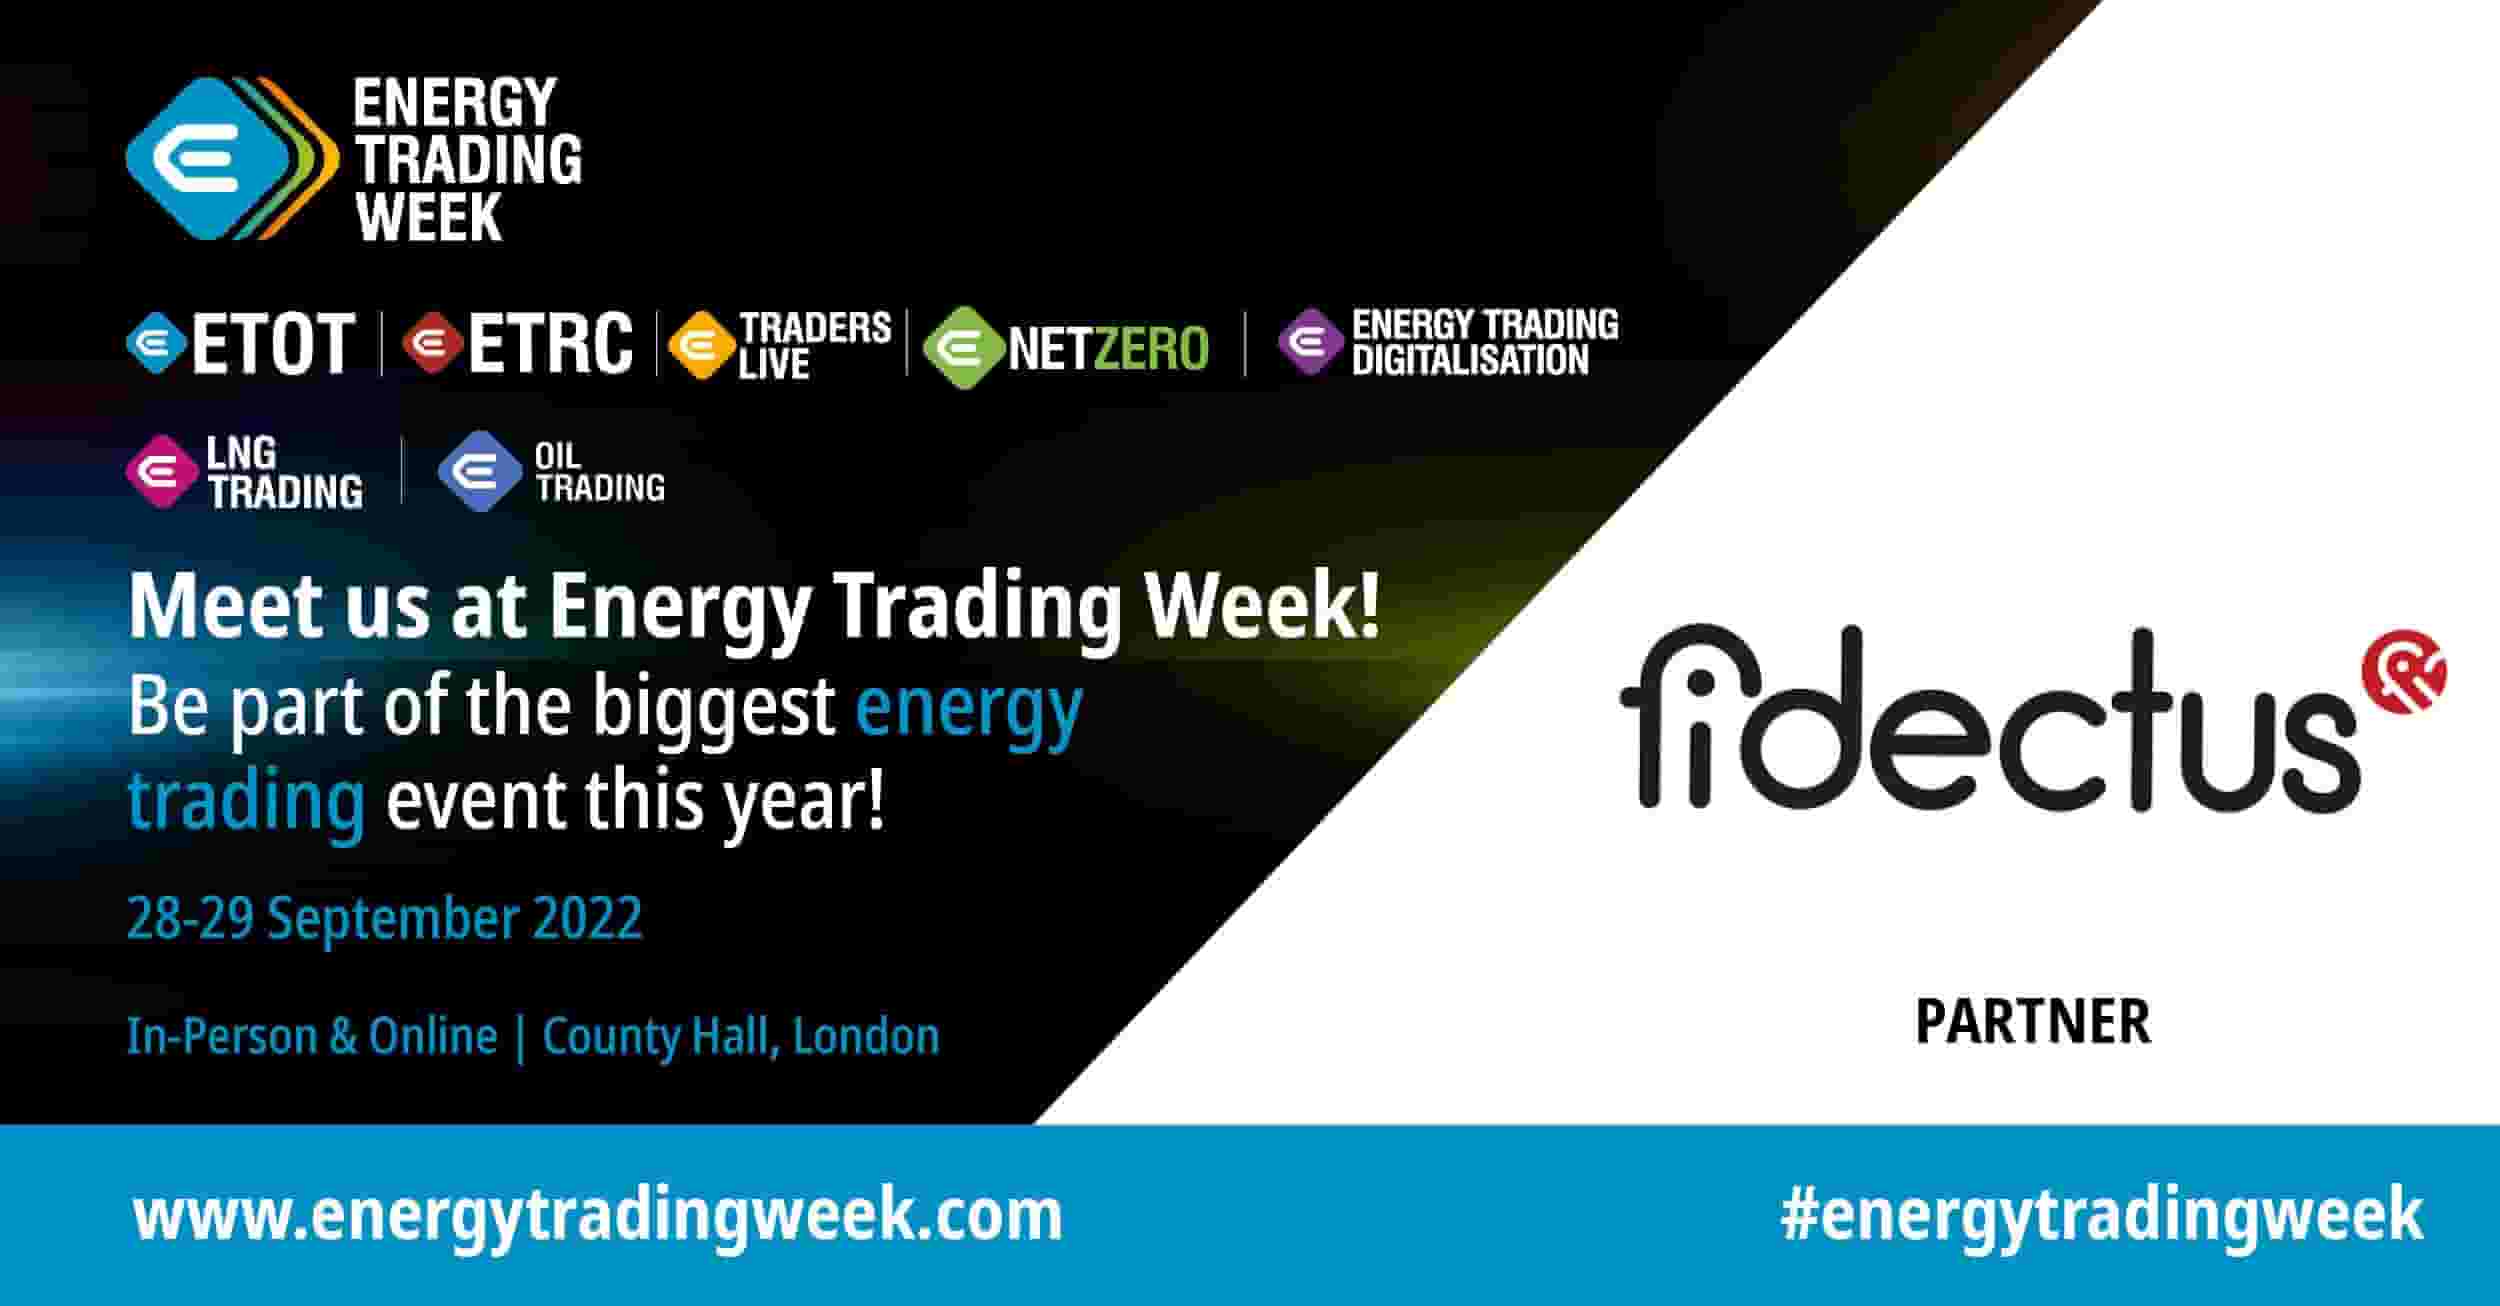 Meet Fidectus at Energy trading week 2022